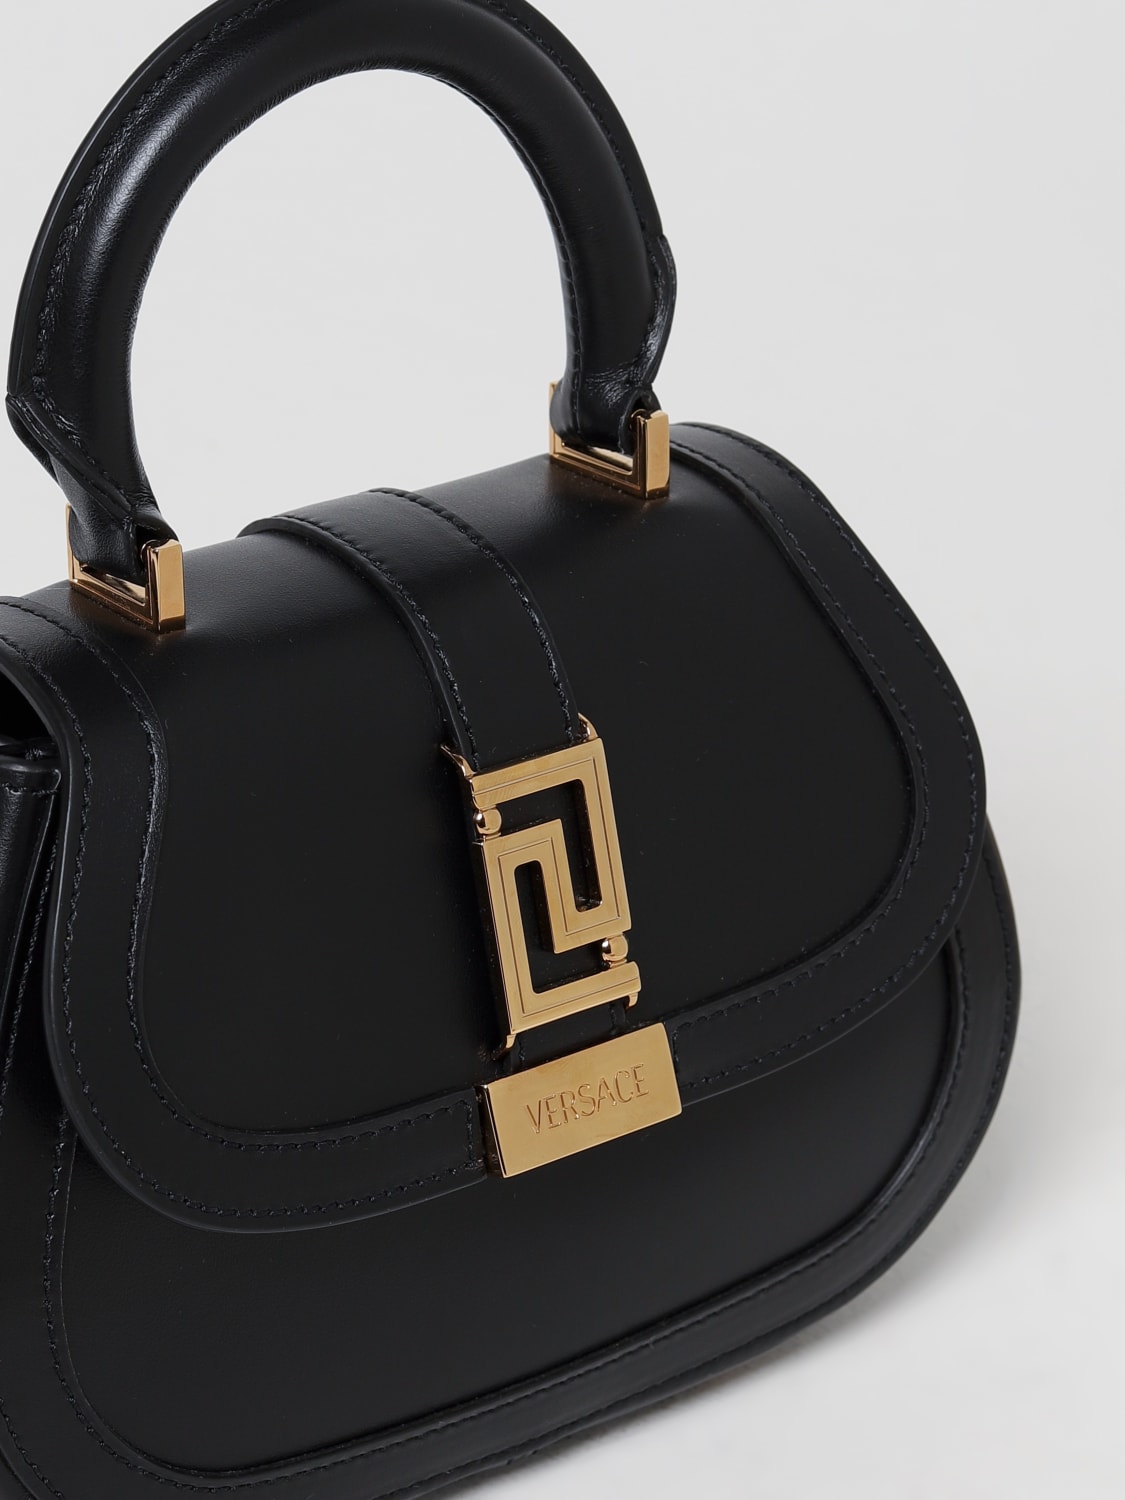 Fendi X Versace Handbags for Women - Vestiaire Collective